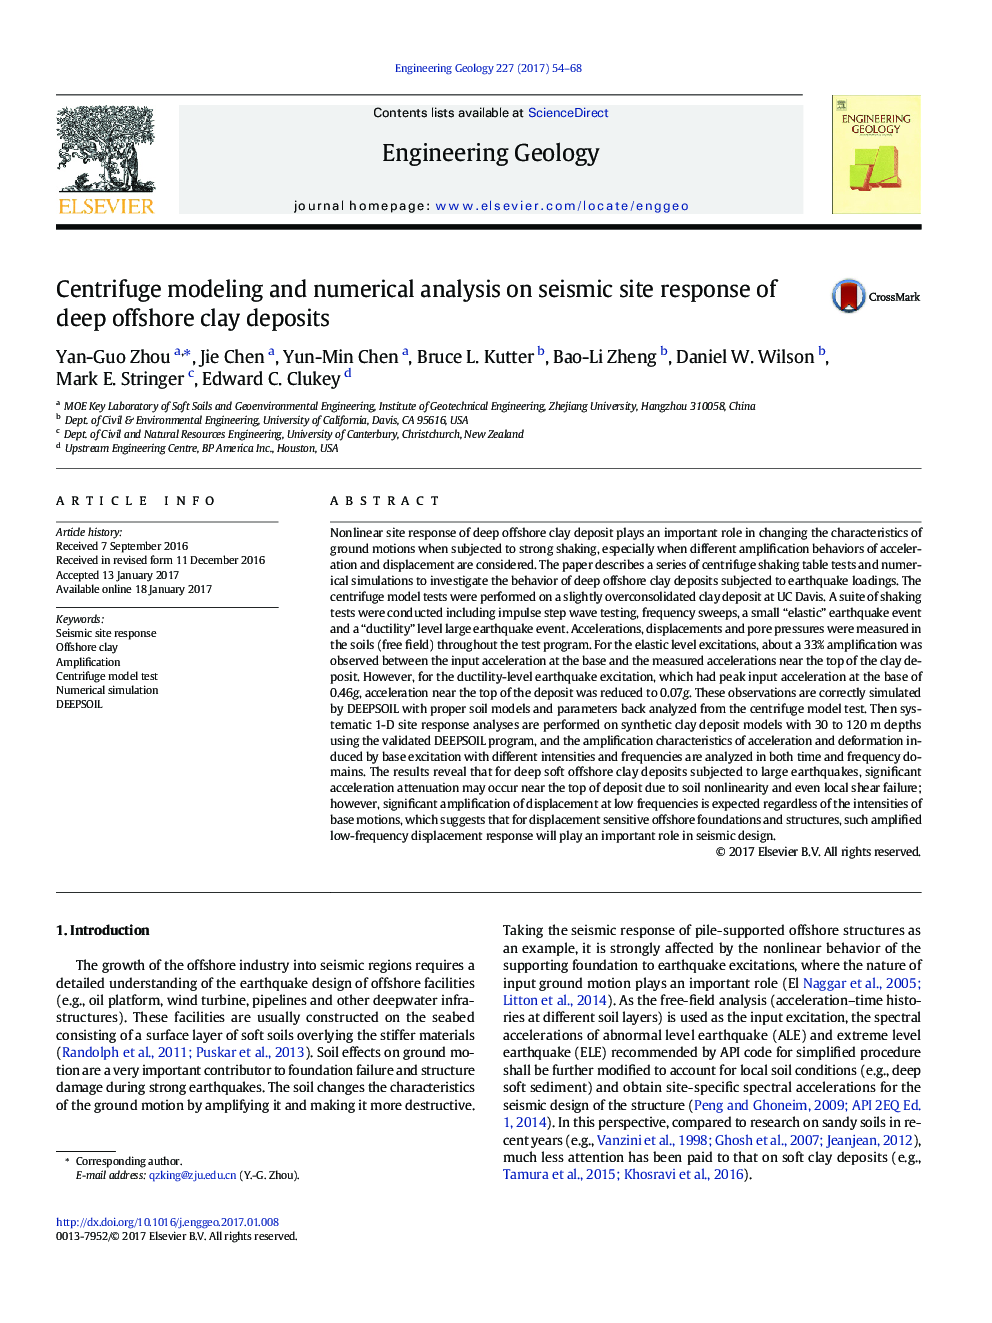 مدل سازی سانتریفیوژ و تجزیه و تحلیل عددی در پاسخ به سایت لرزه ای رسوبات رسوبی دریای عمیق